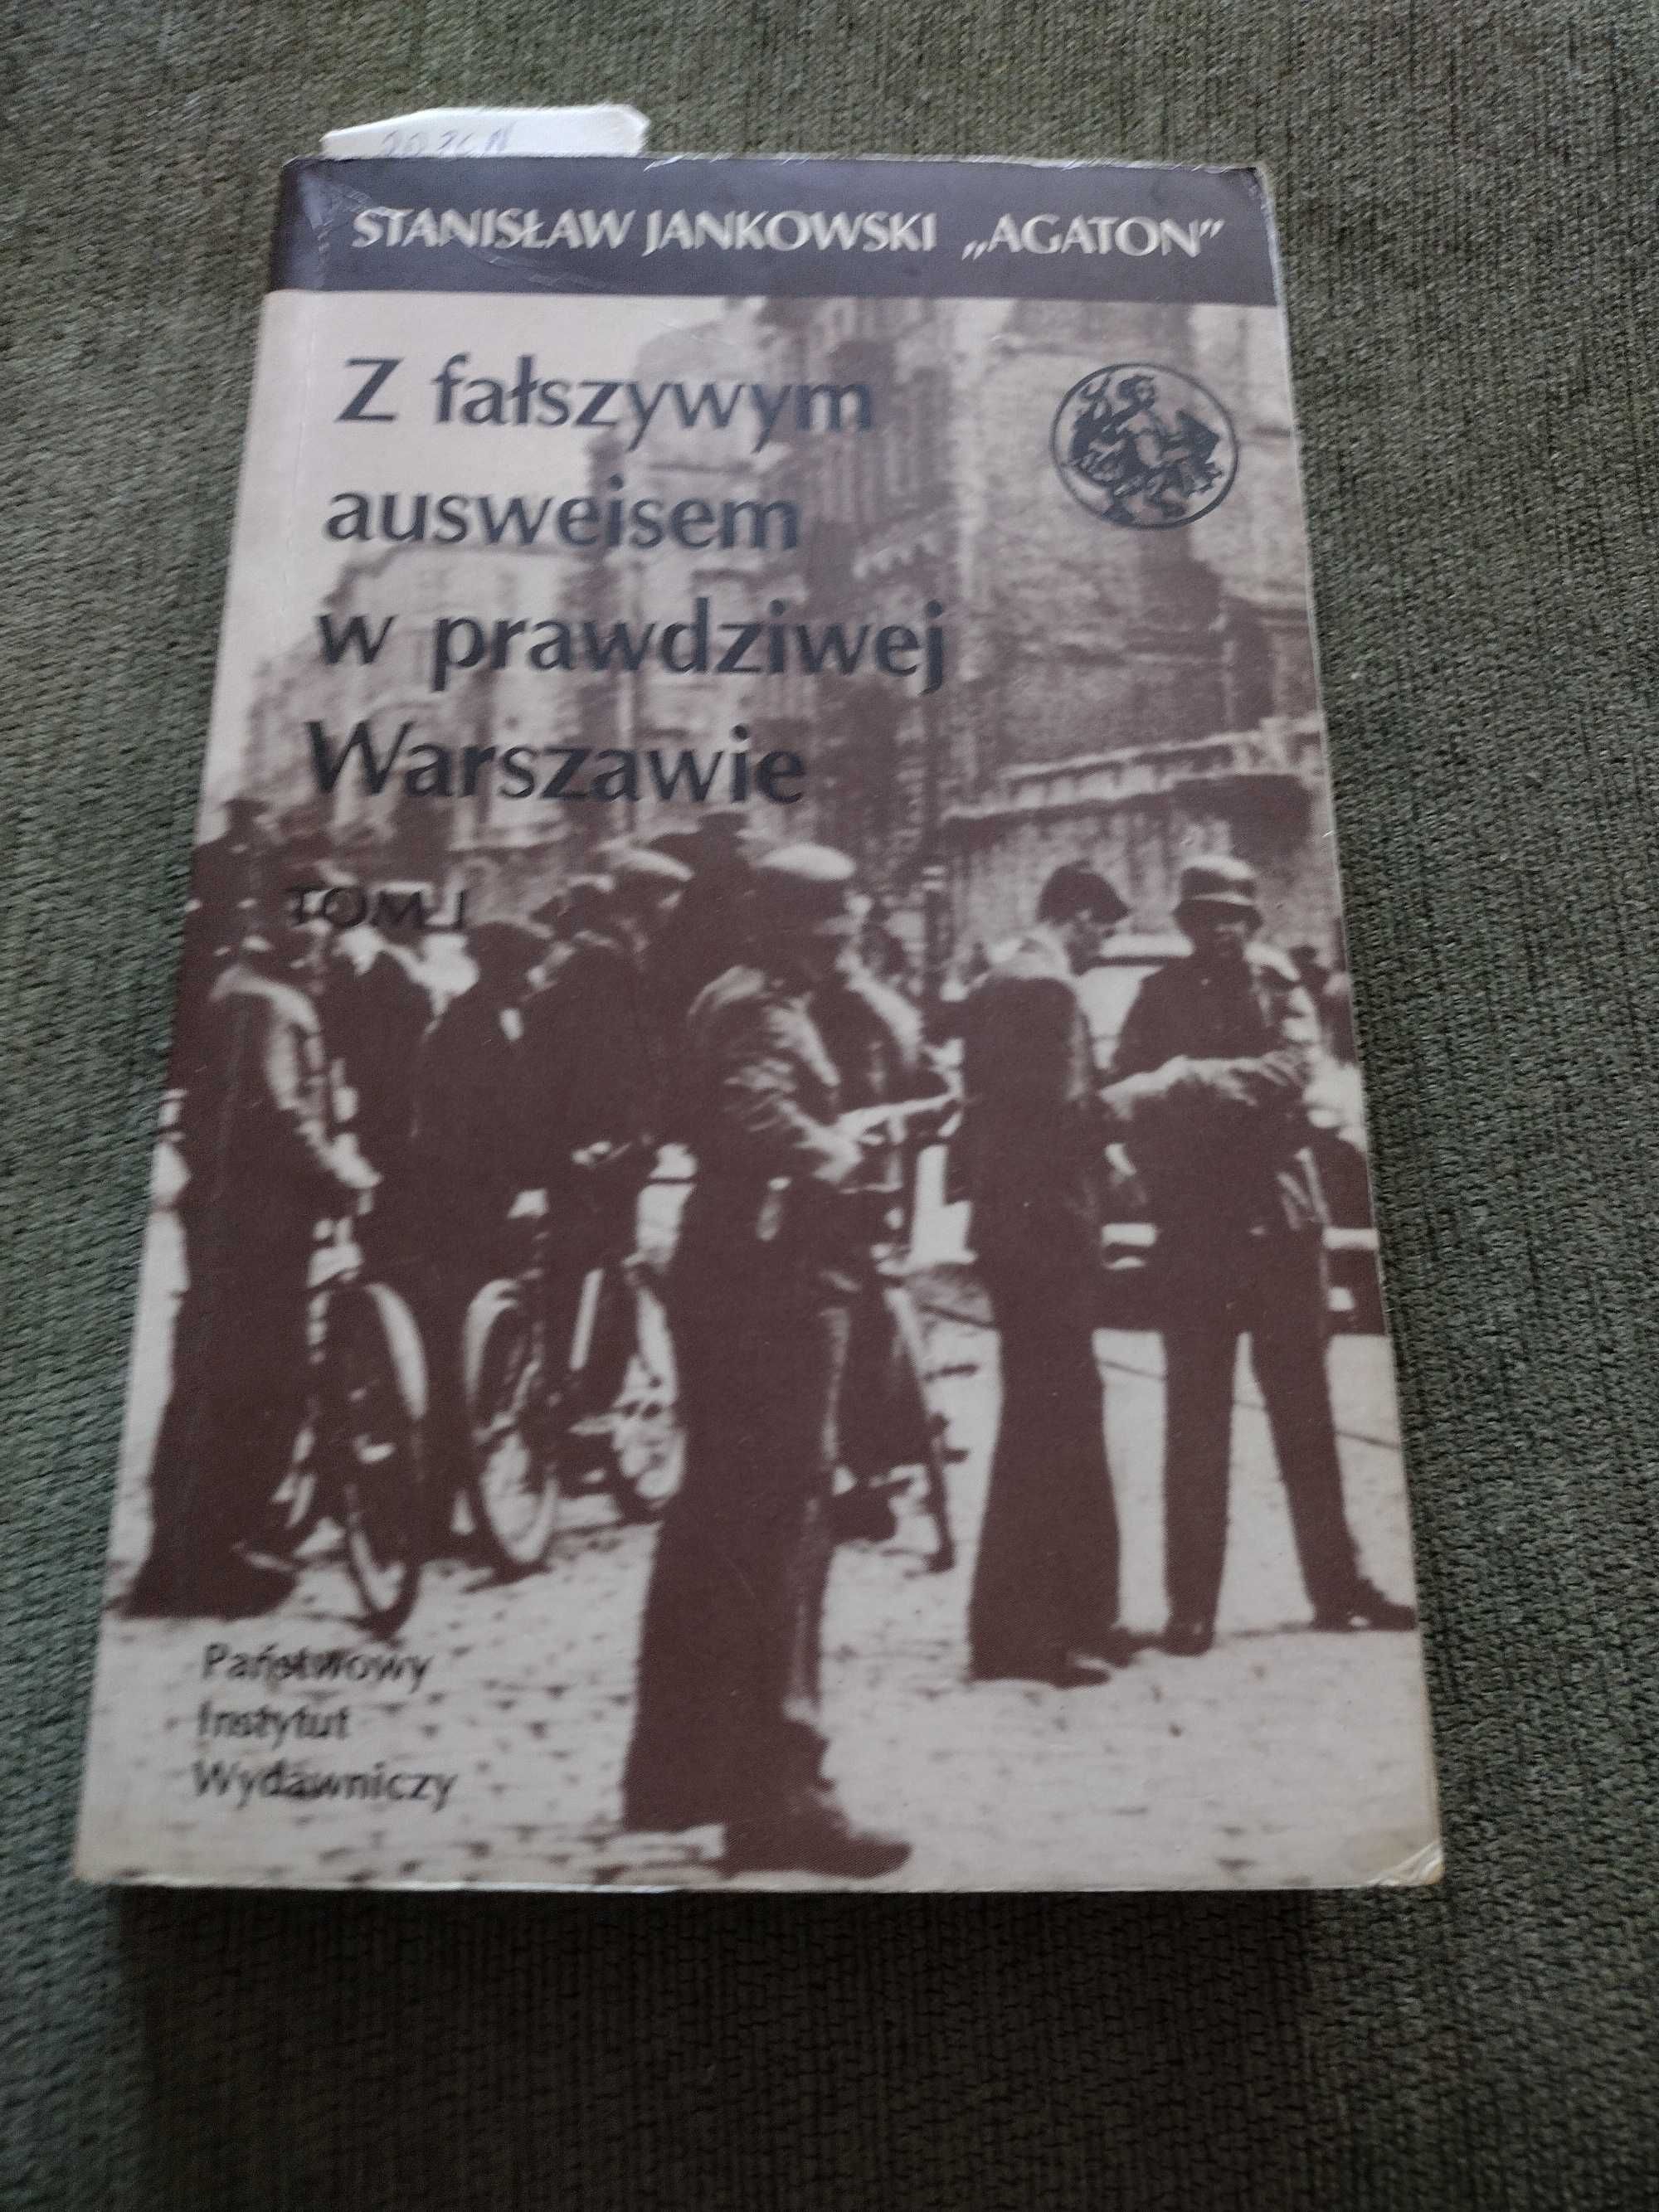 "Z fałszywym ausweisem w prawdziwej Warszawie" Stanisław Jankowski